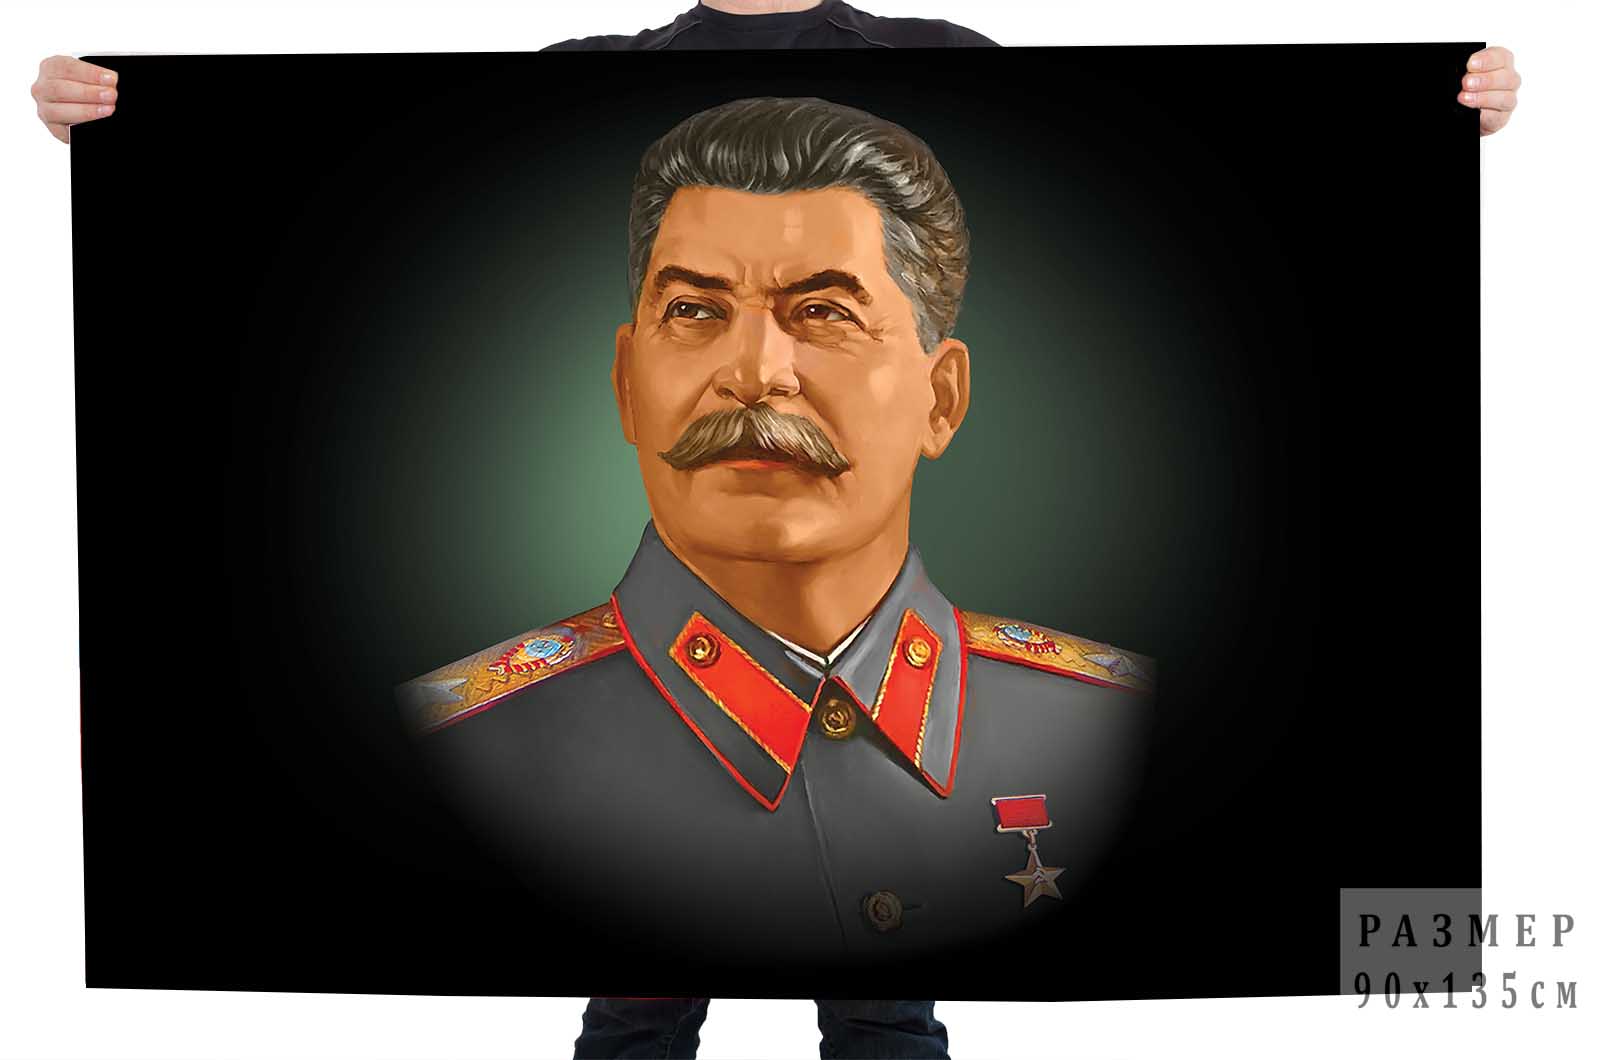 Купить флаг с портретом Сталина